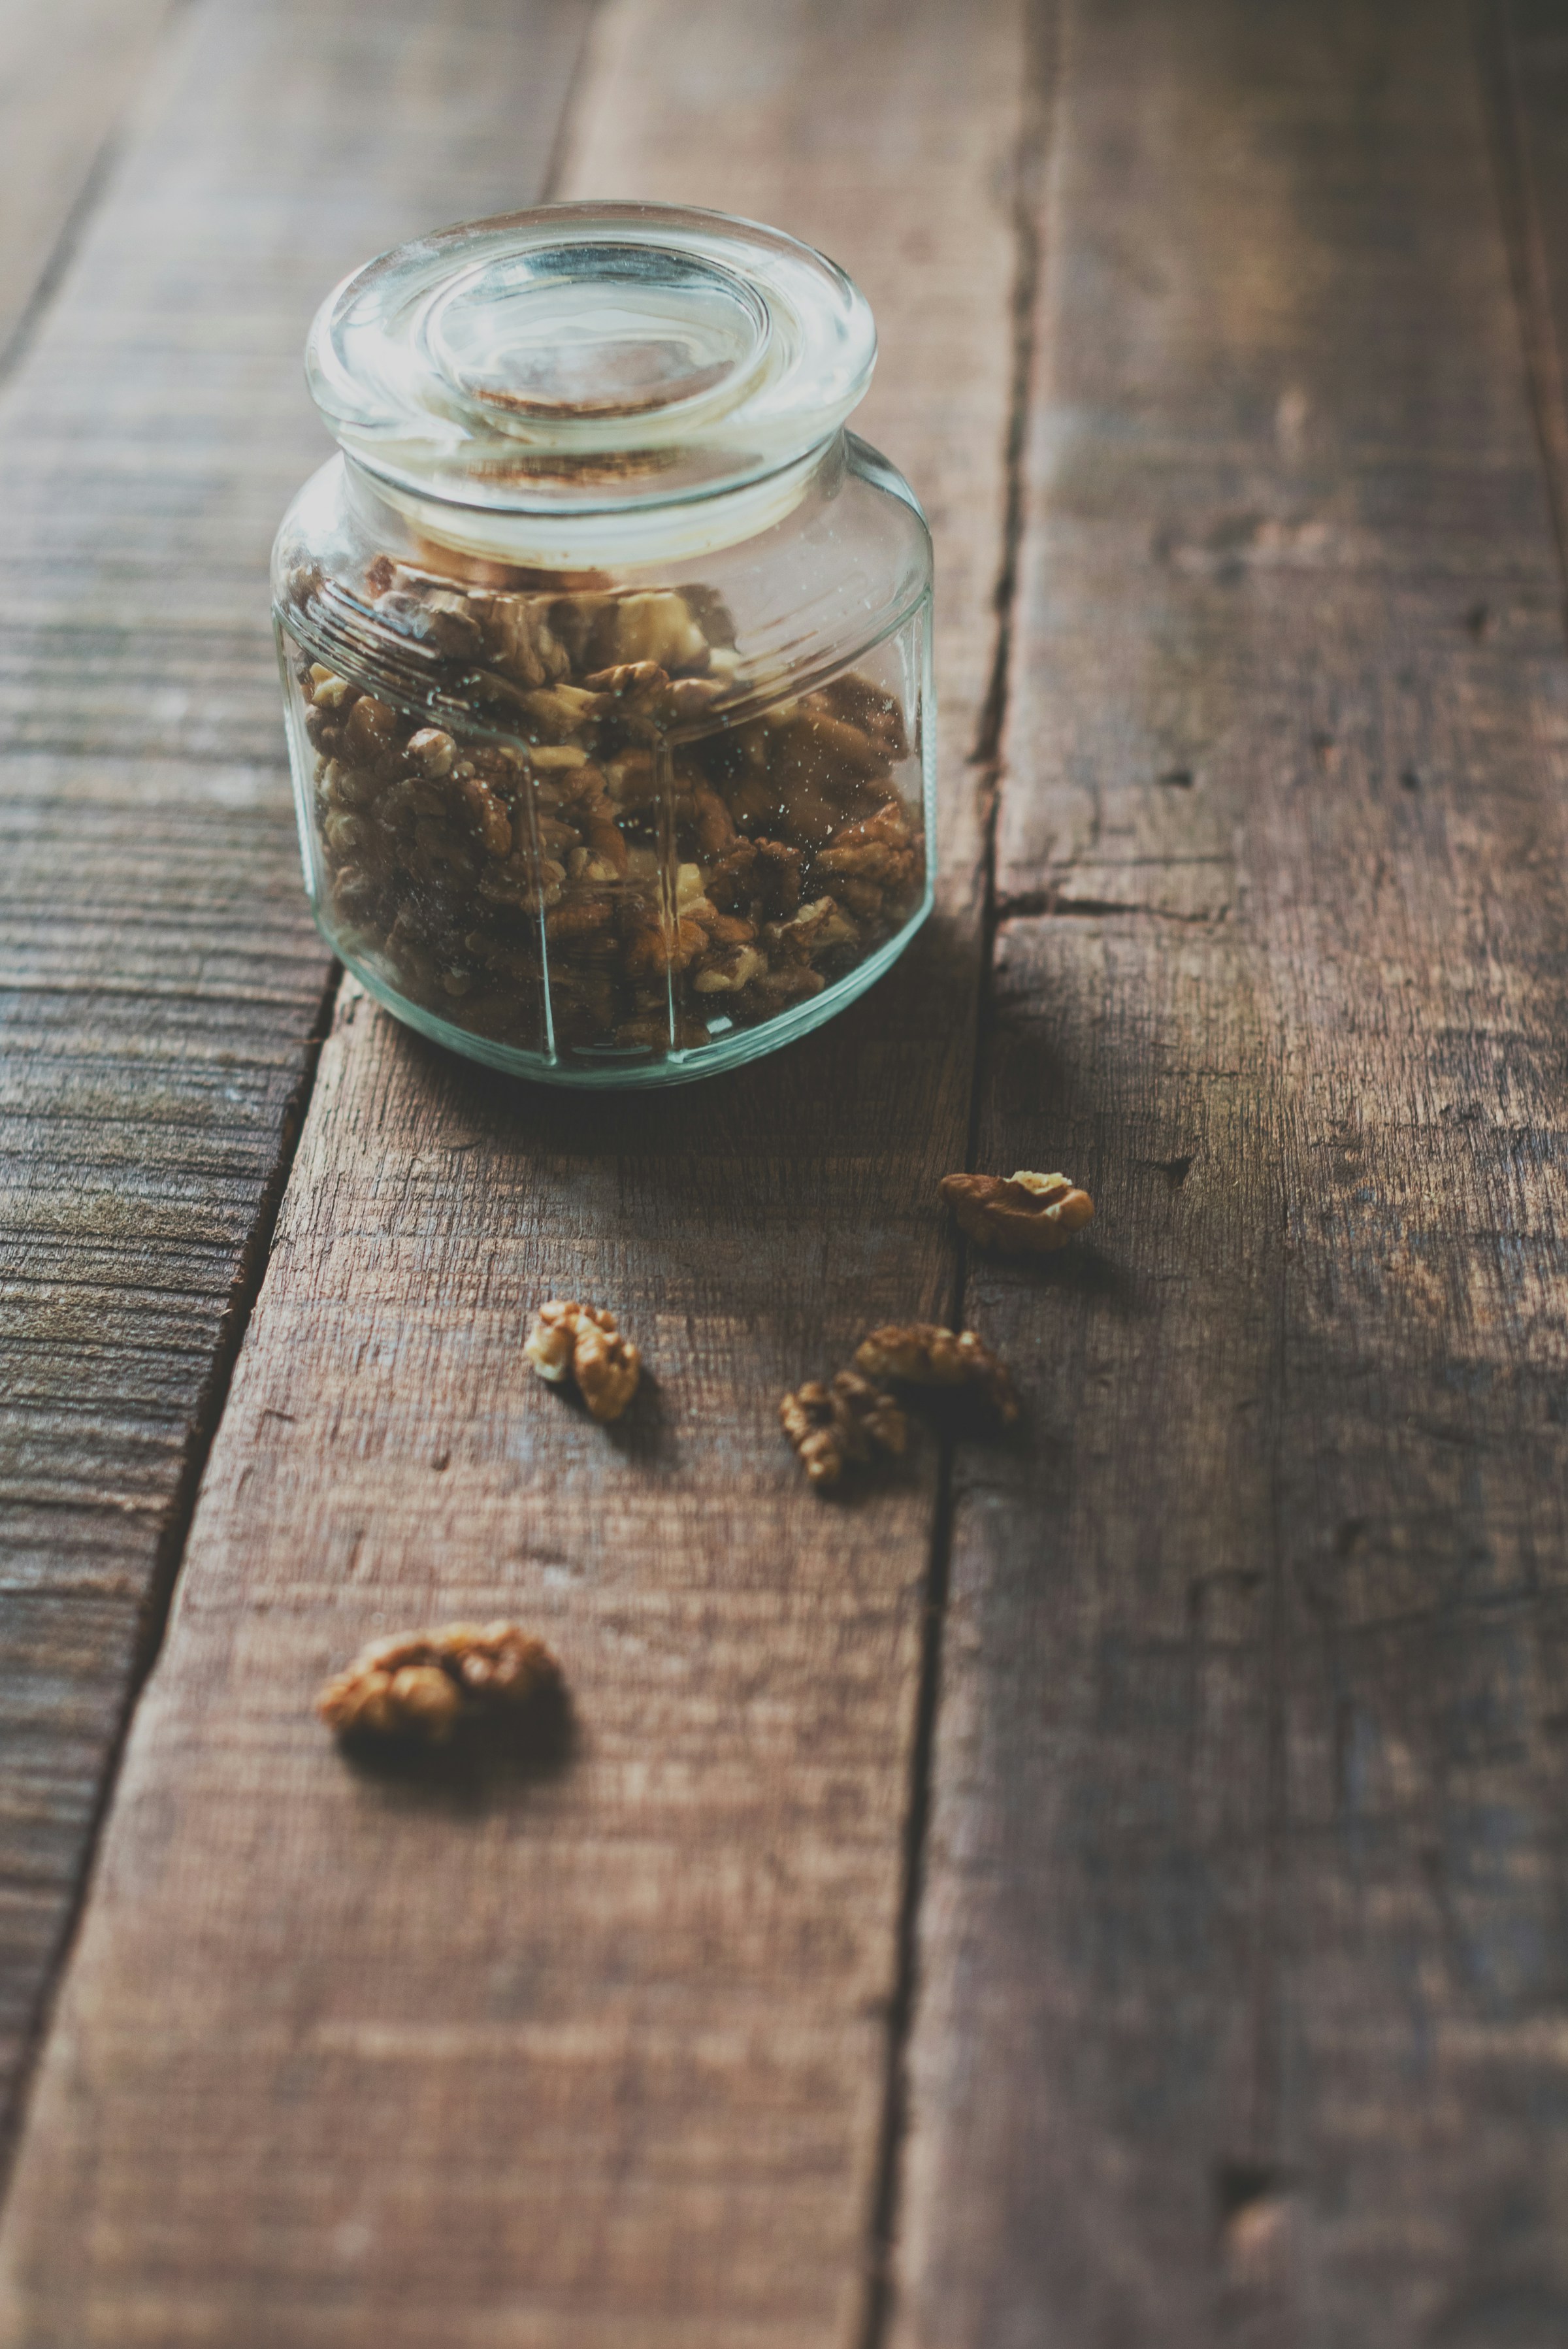 A jar of walnuts | Source: Unsplash